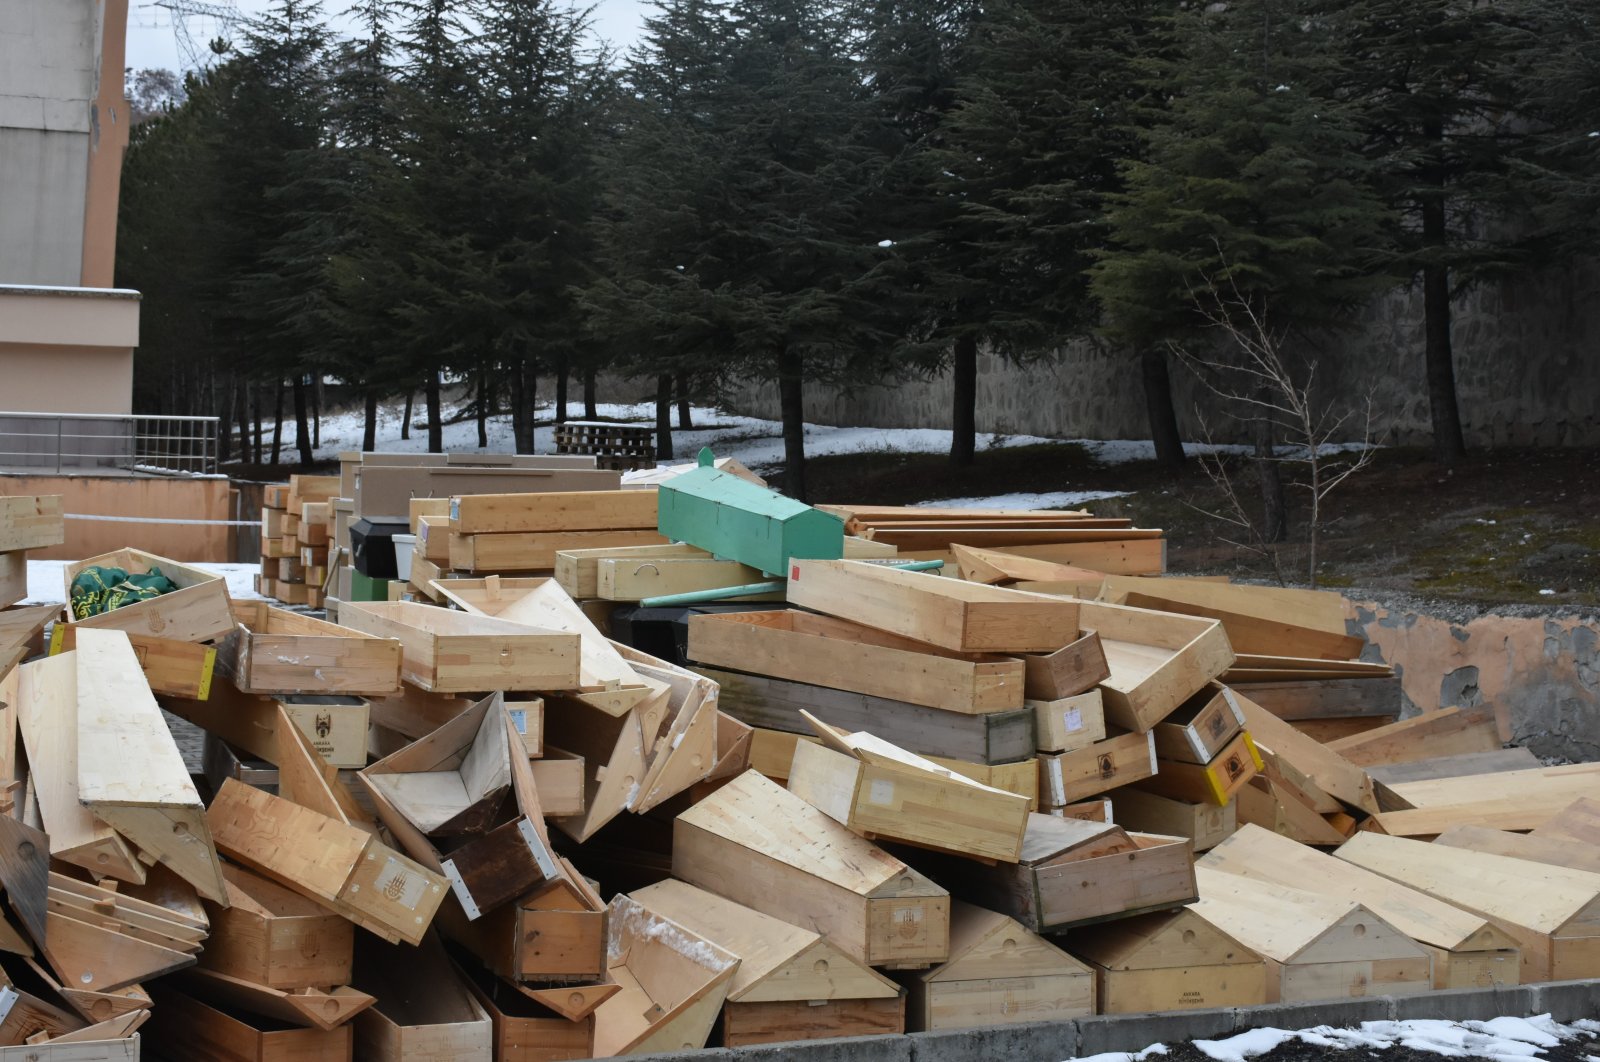 Marangozët dërgojnë 2000 arkivole për funeralet në zonën e tërmetit të Turqisë